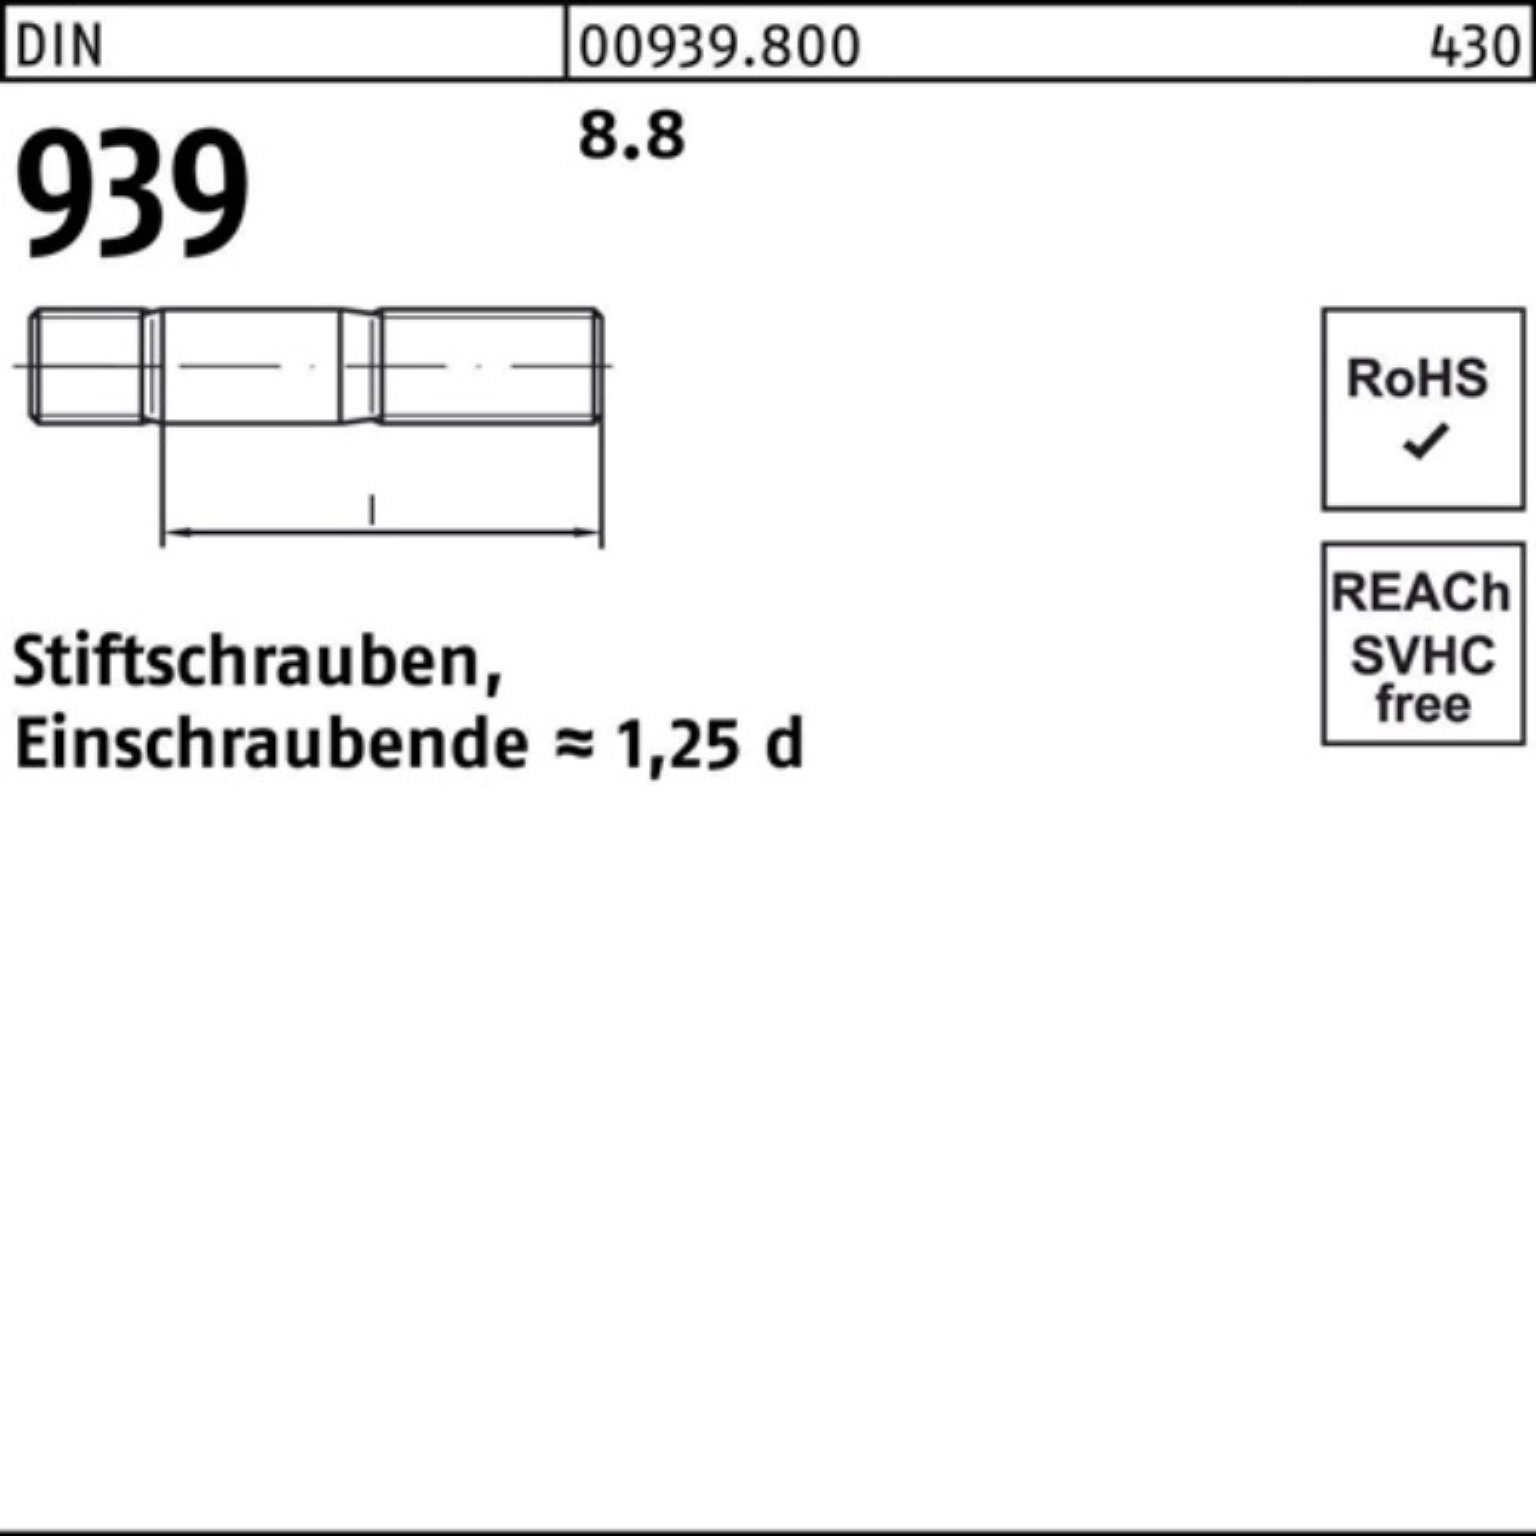 1 M24x Reyher Stiftschraube DIN 70 Stiftschraube 100er 939 Einschraubende=1,25d Pack 8.8 St